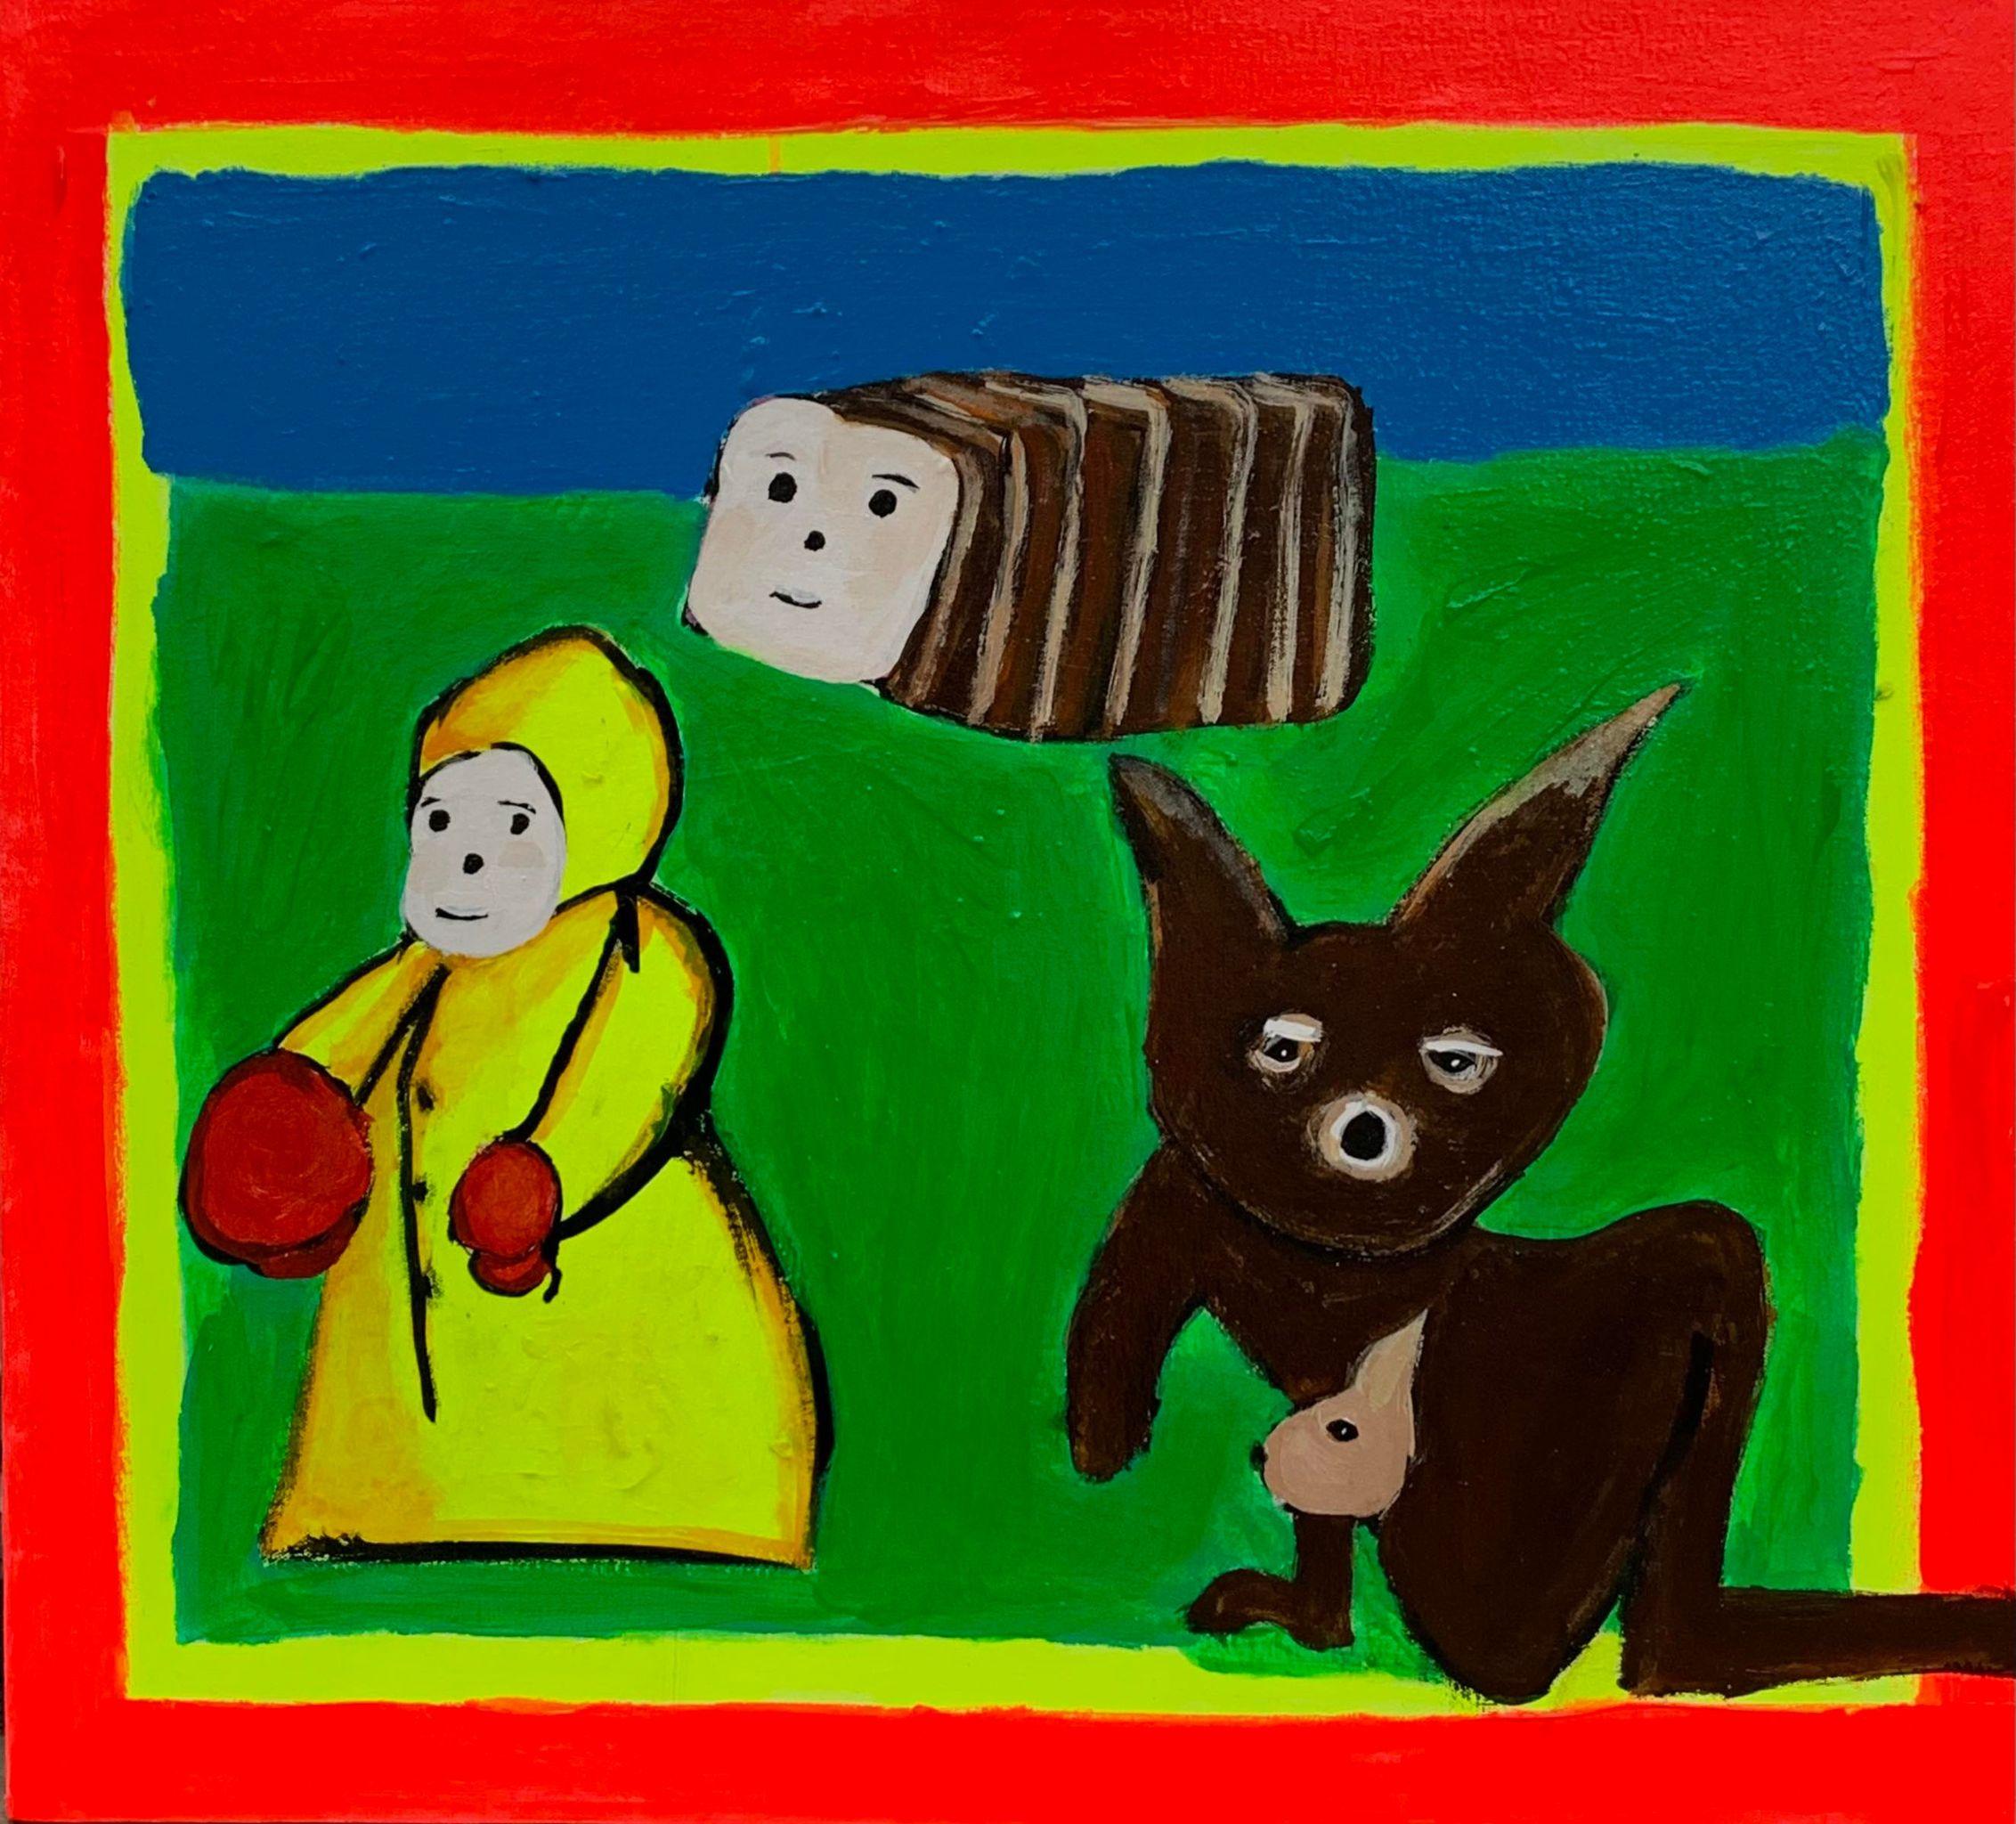 Braun und Gelb 1
2022
Acryl auf Leinwand
24 x 28 Zoll

Brian Leos produktives Schaffen ist irgendwo zwischen Grunge-Surrealismus, Post Painterly Pop und der New York School angesiedelt. Seine unmittelbare figurative Zeichnung hat einen bescheidenen